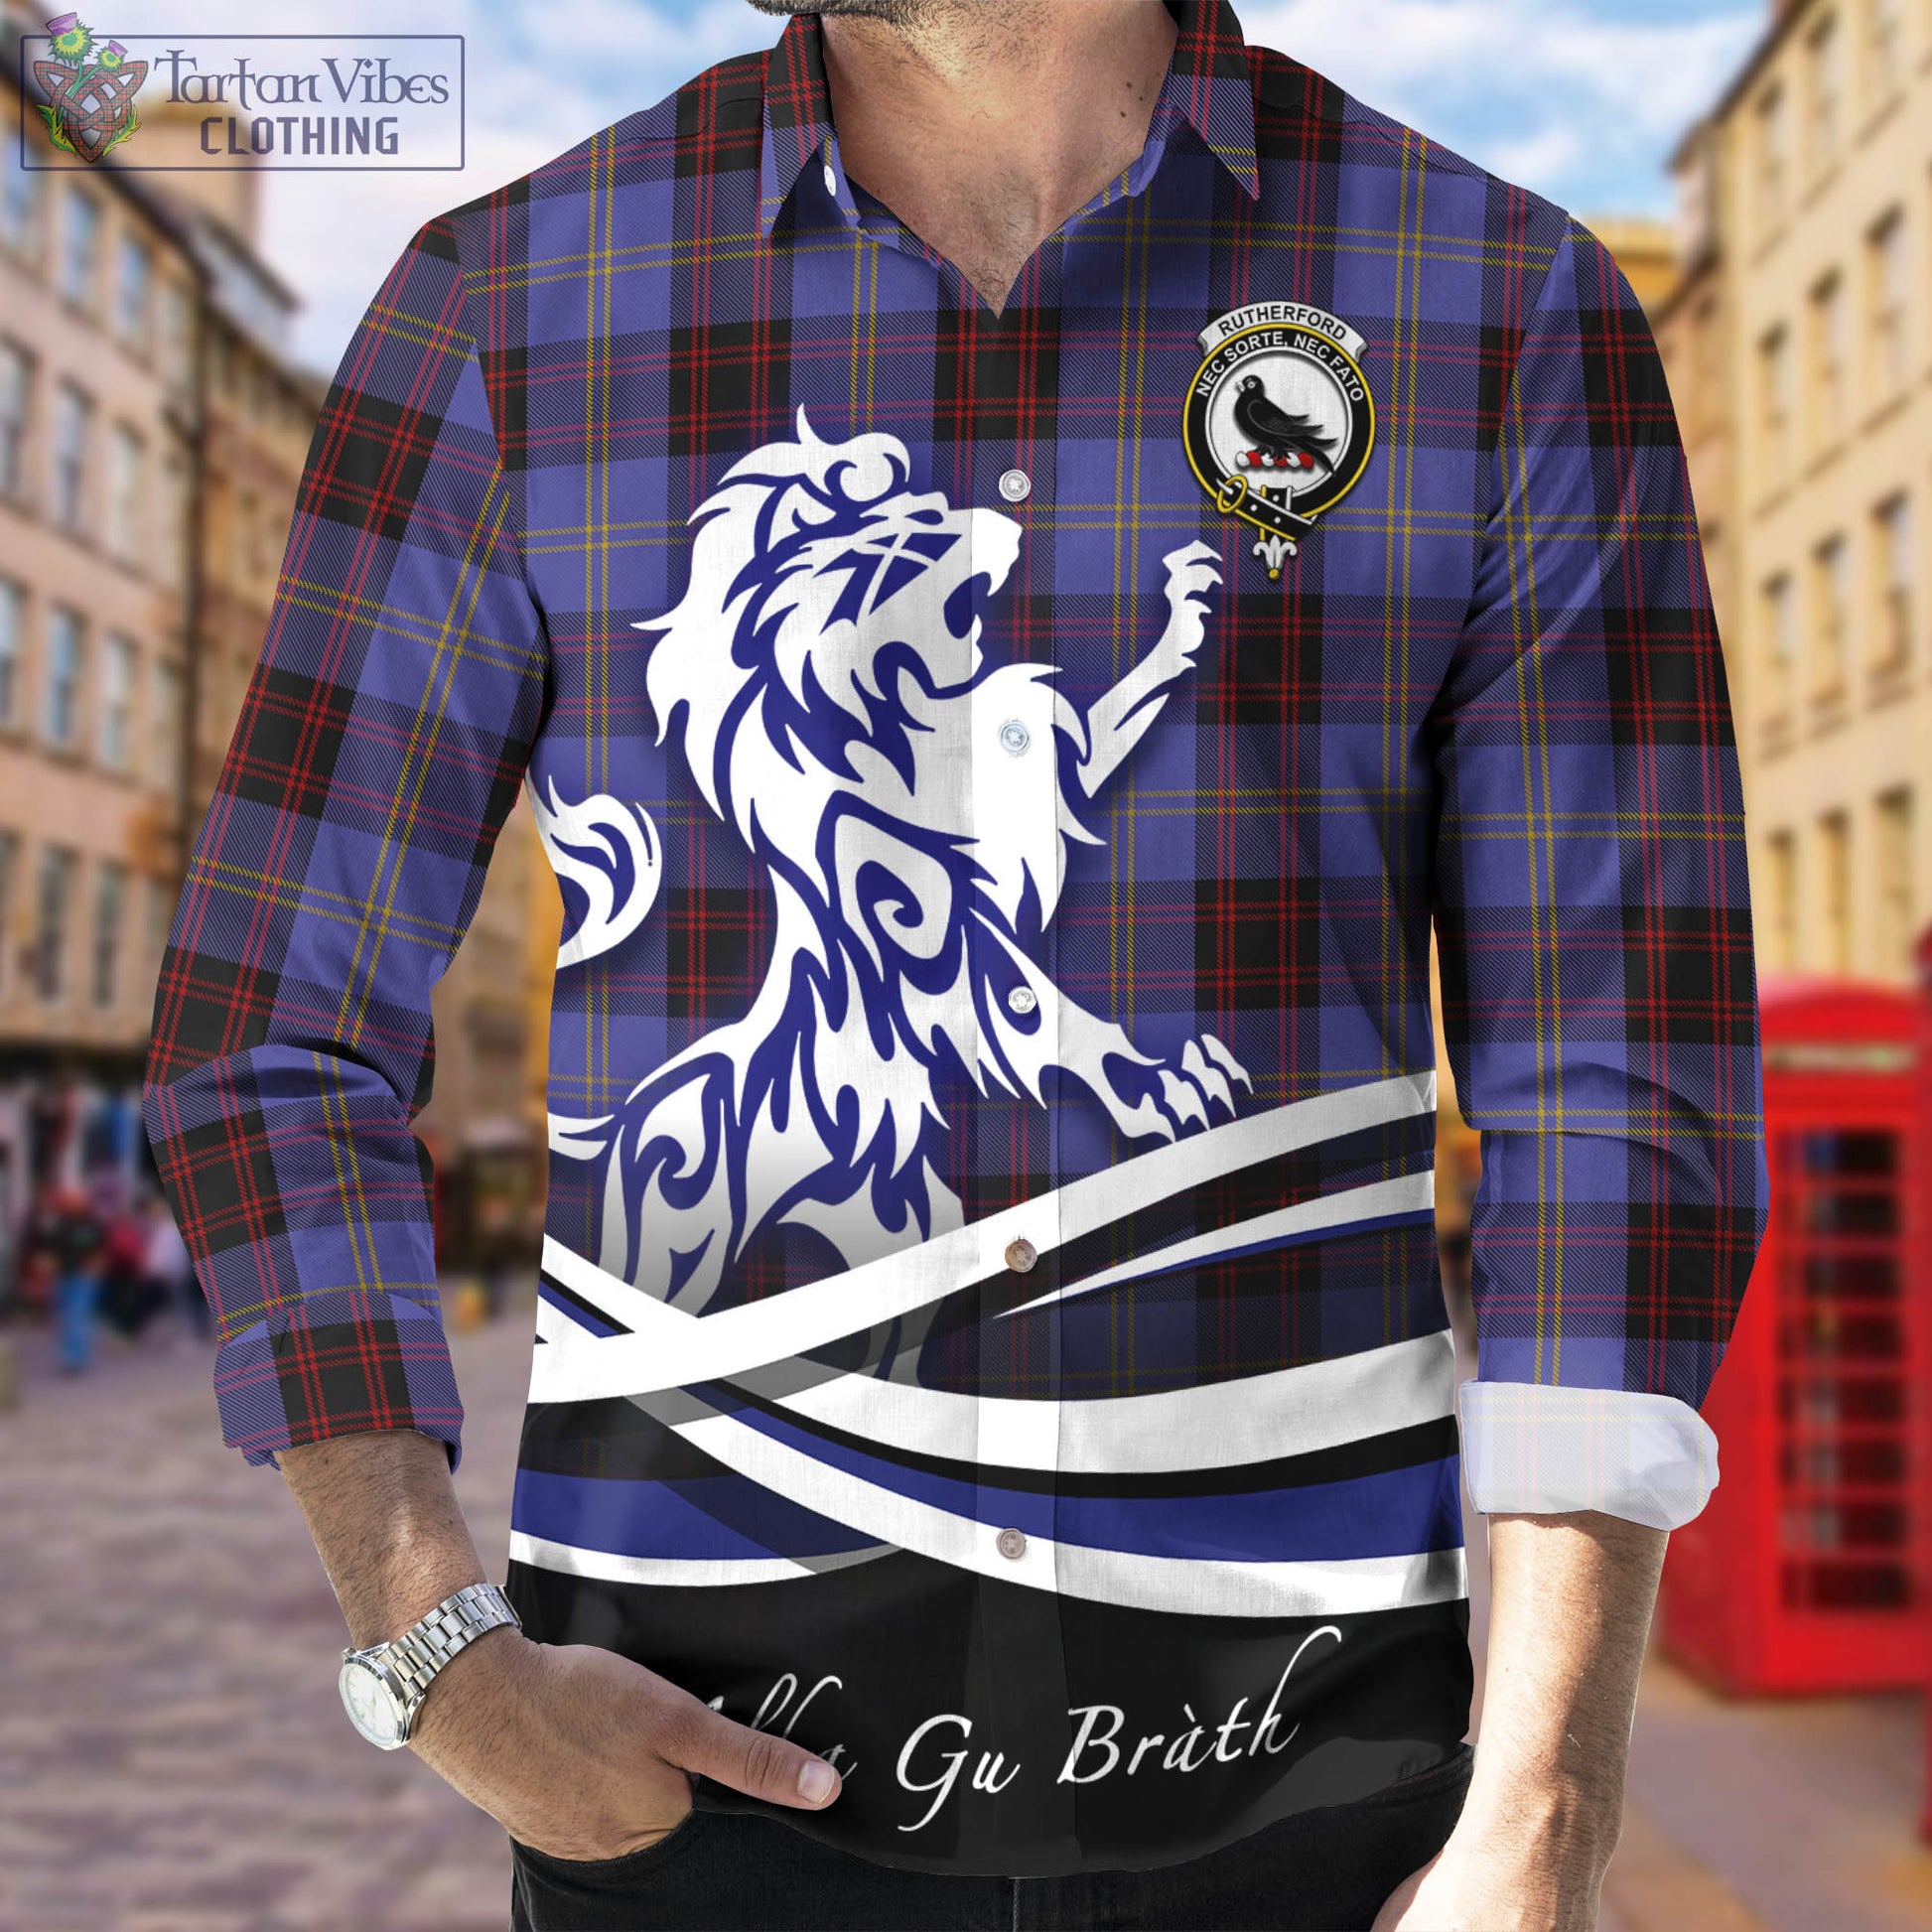 rutherford-tartan-long-sleeve-button-up-shirt-with-alba-gu-brath-regal-lion-emblem